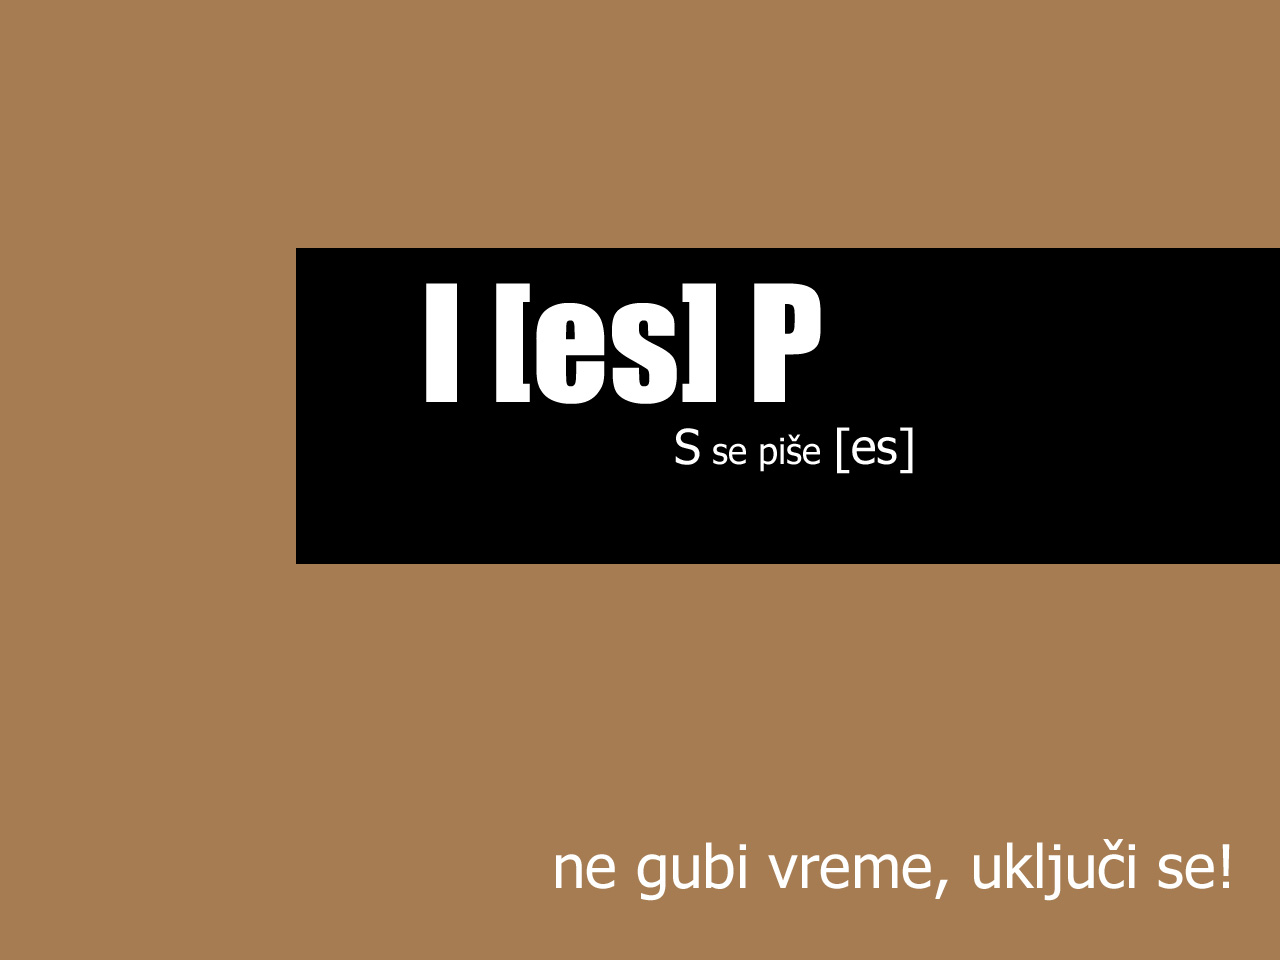 IesP